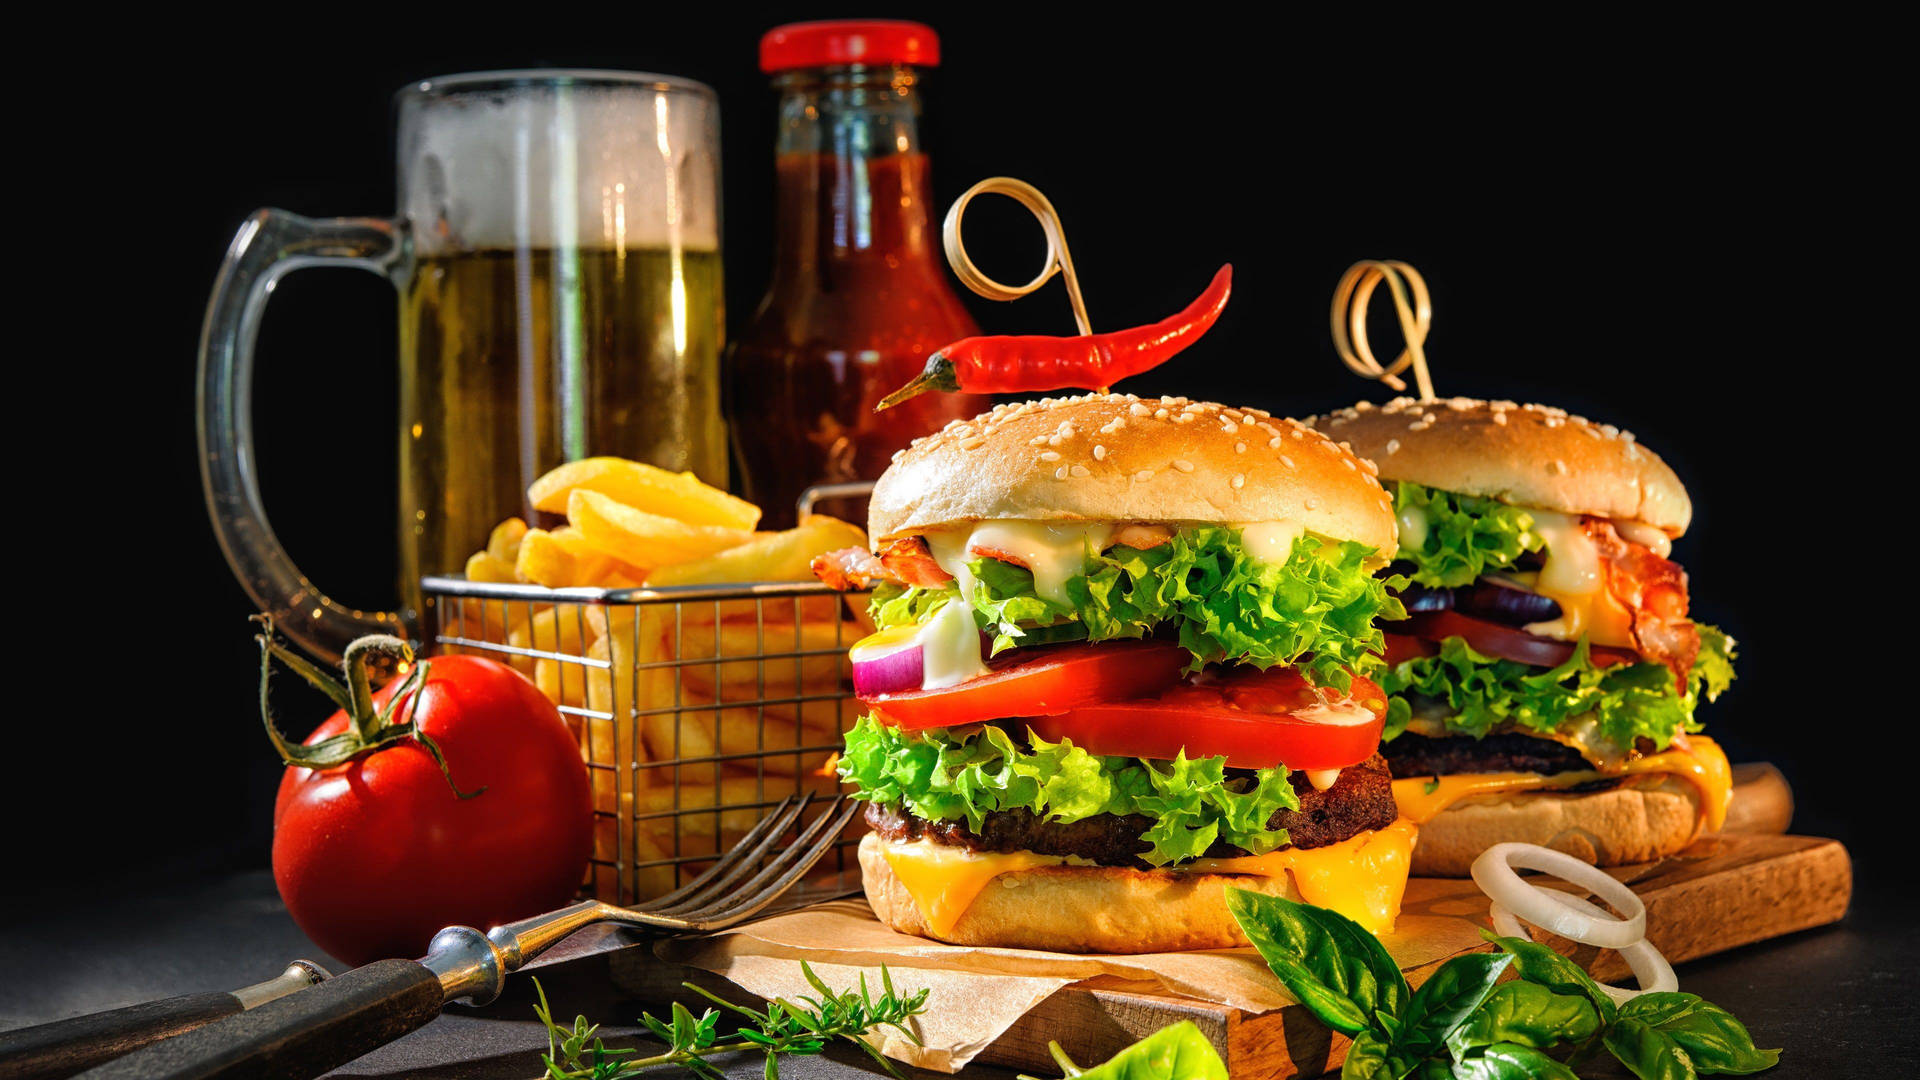 Verlockendecheeseburger Mit Bier, Pommes Und Tomate Wallpaper